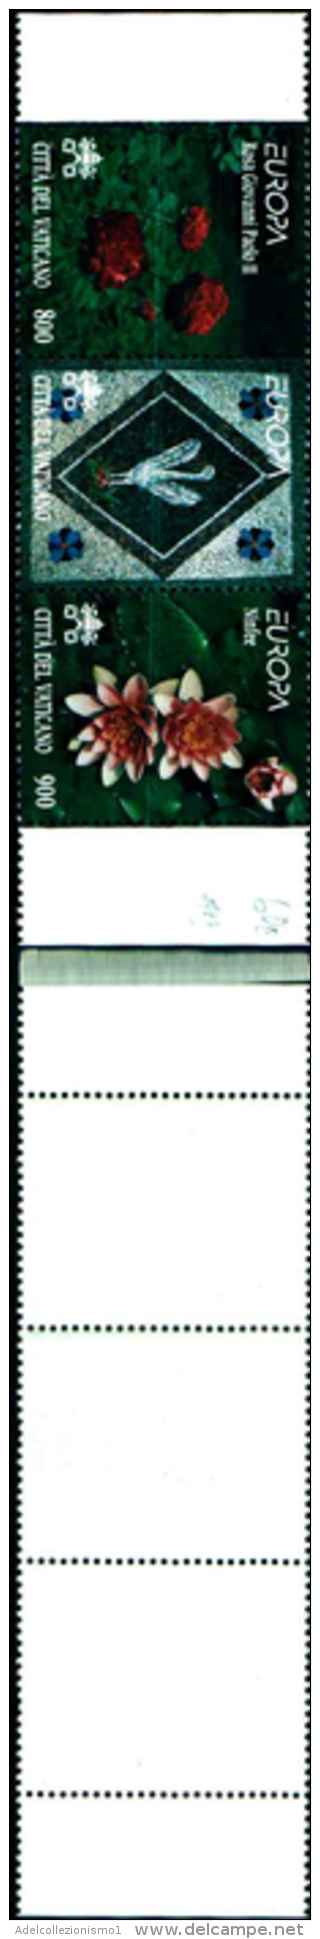 134) VATICANO-6 Serie Complete +2 Foglietti Del 1999 Nuove Con Gomma Integra** - Unused Stamps